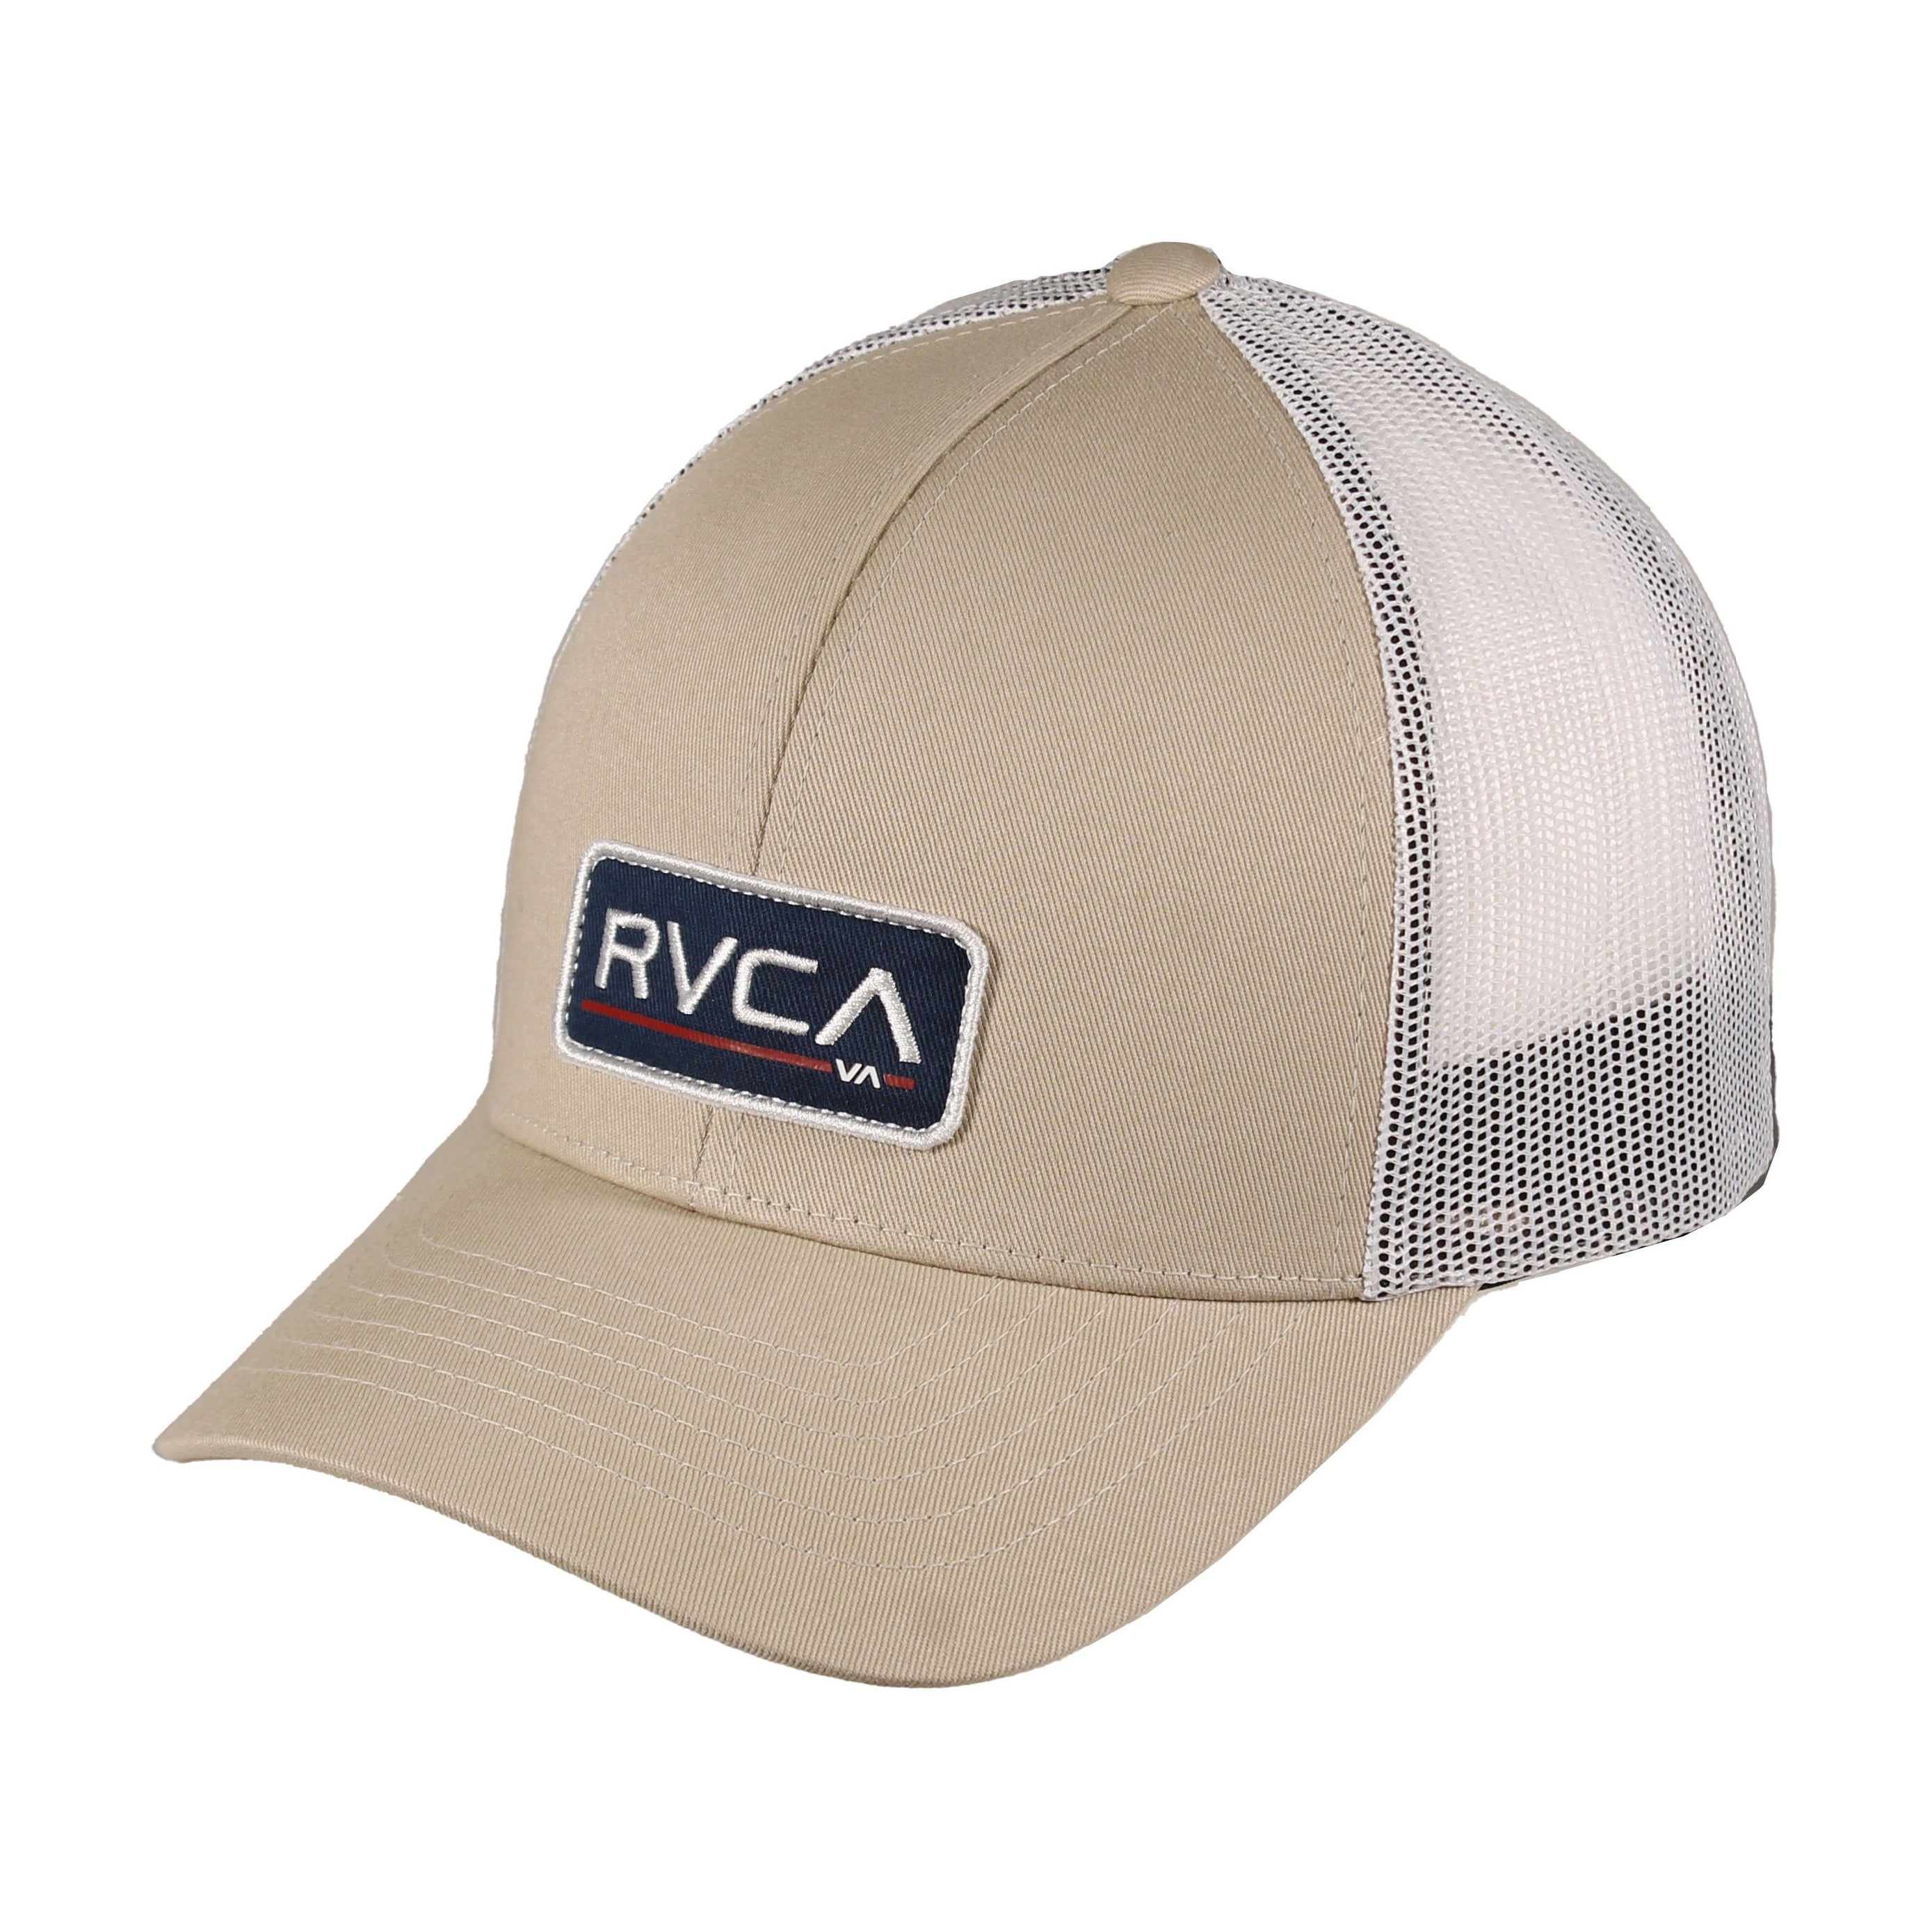 RVCA Ticket Trucker Hat TAN OS